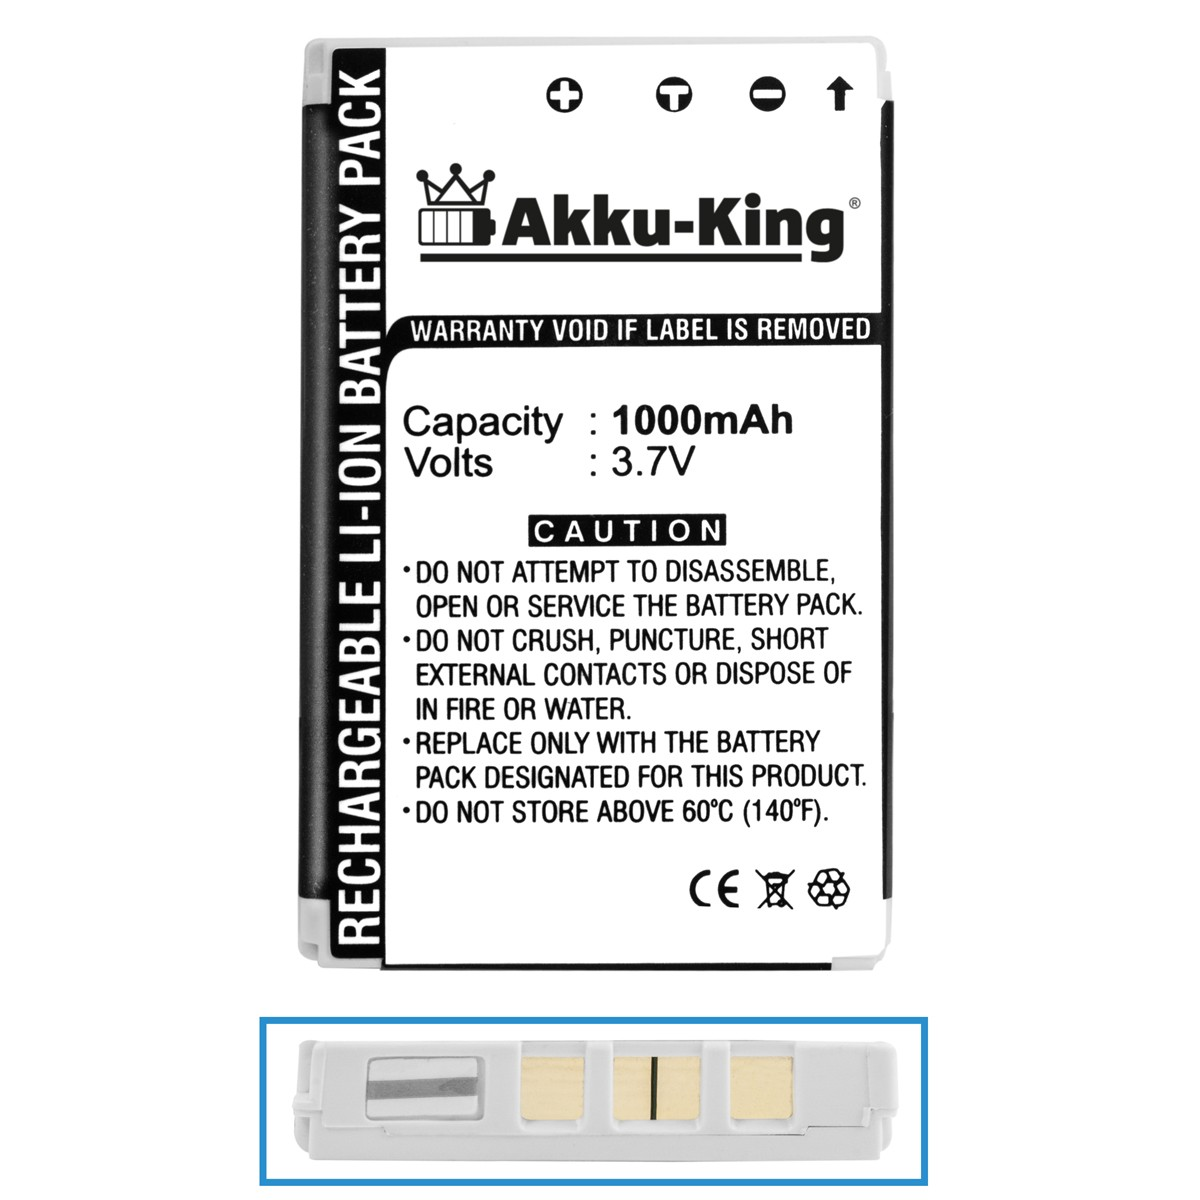 300-203712001 kompatibel Handy-Akku, 1000mAh Volt, AKKU-KING Holux mit Li-Ion Akku 3.7